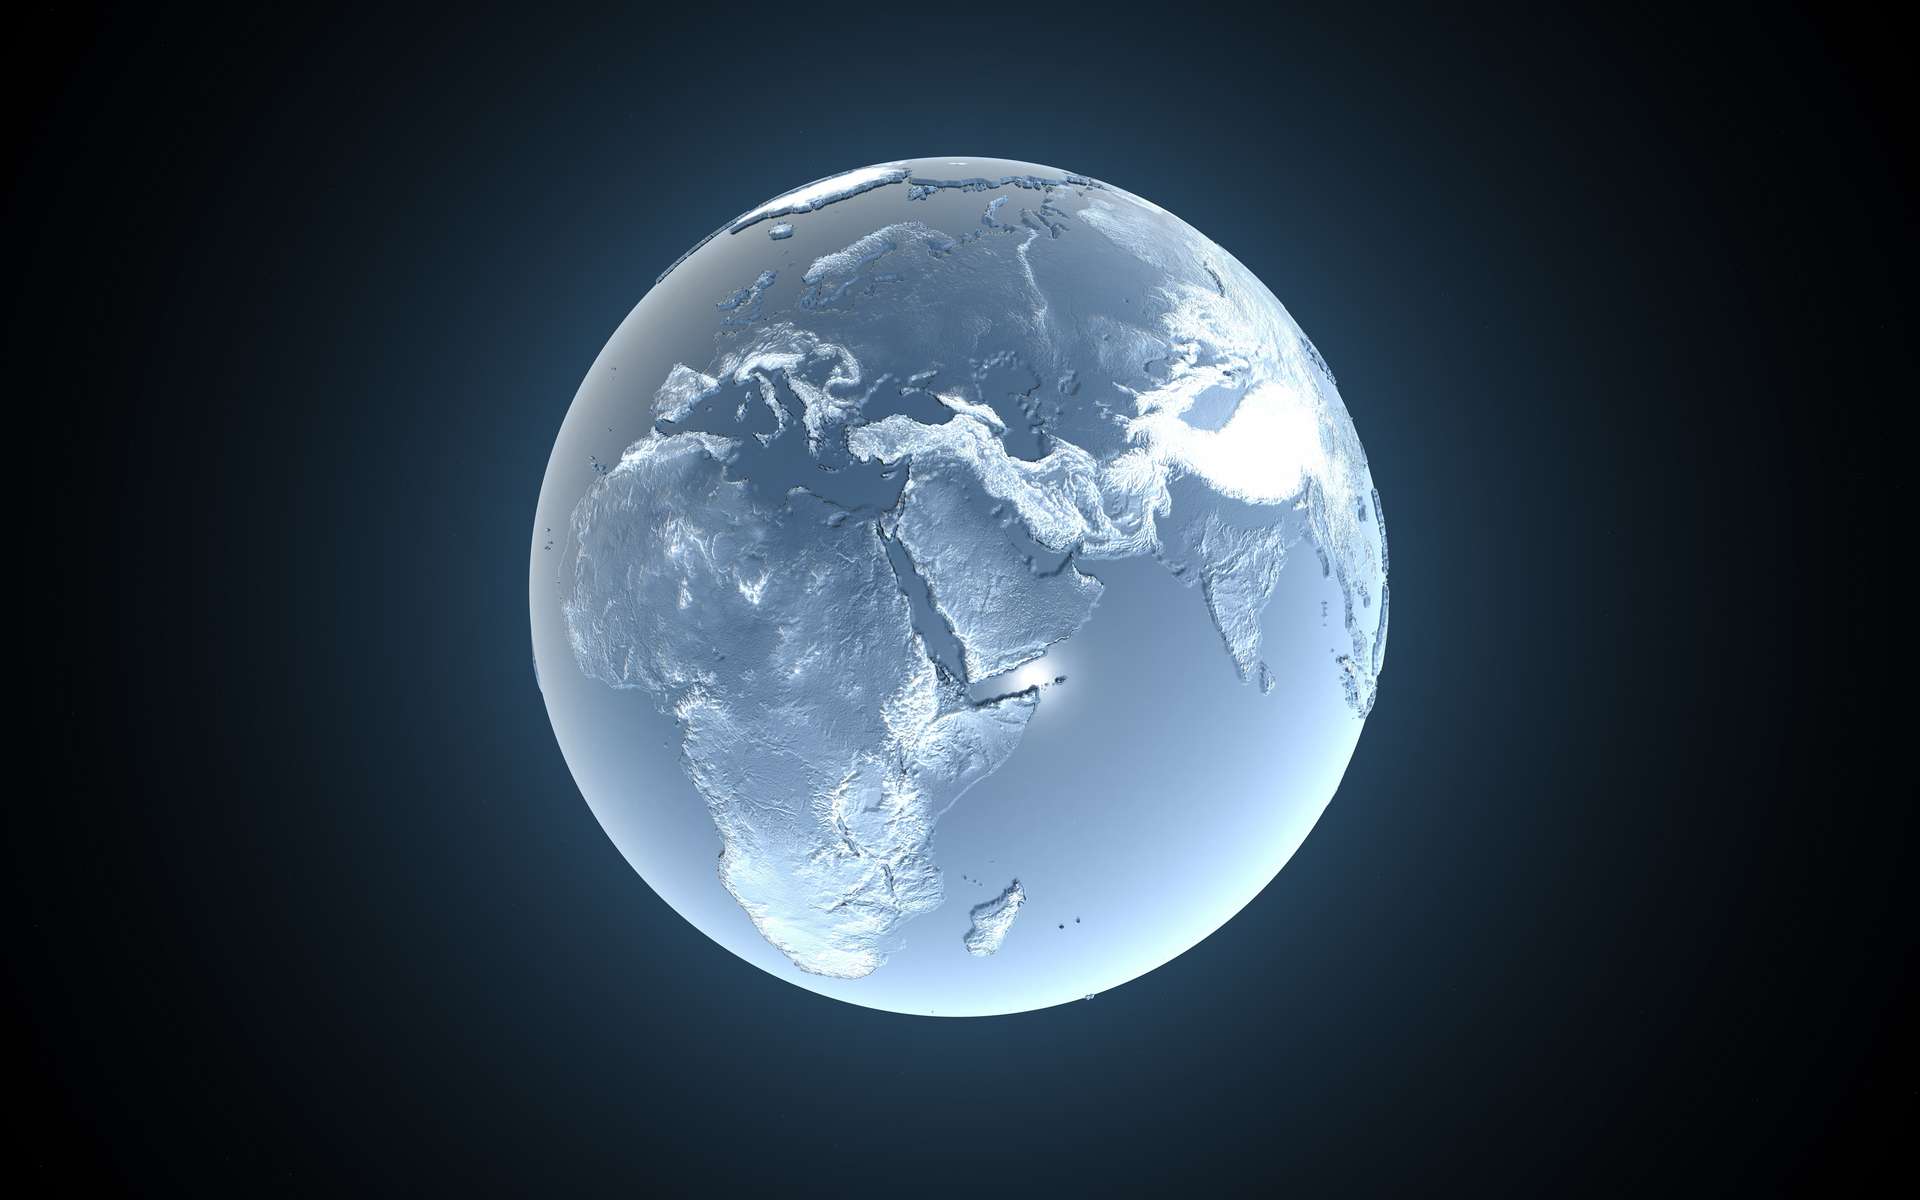 Quelle température faisait-il sur Terre durant la dernière période glaciaire ?